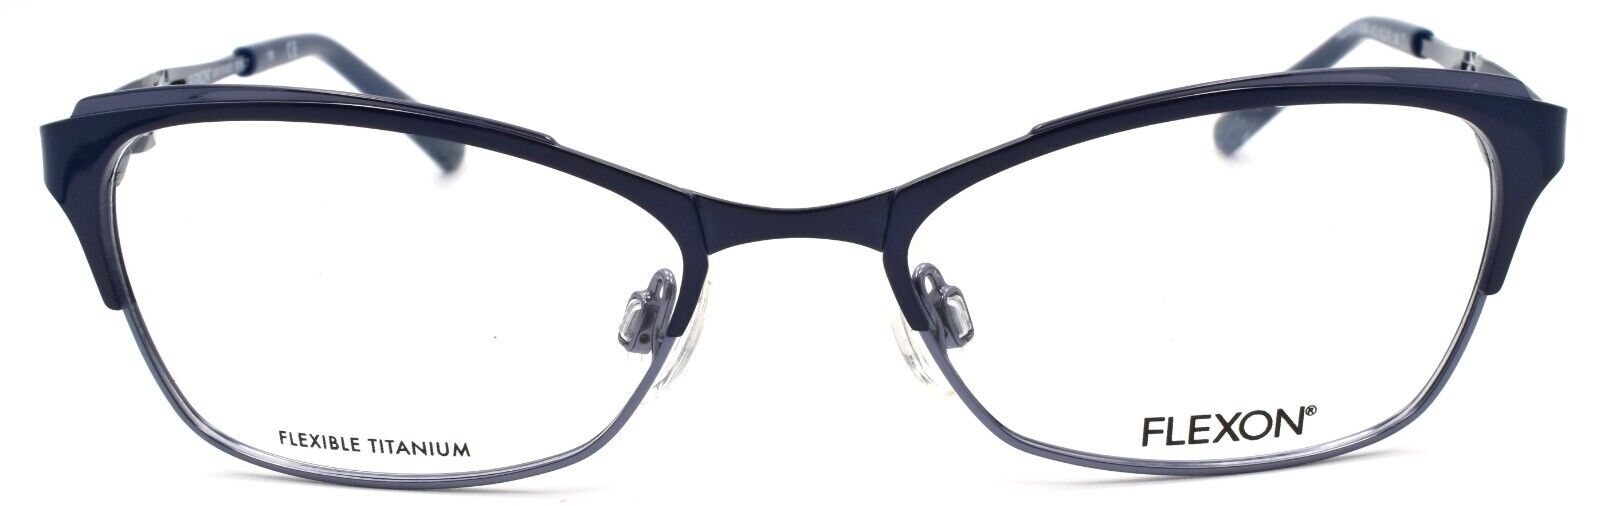 2-Flexon W3000 412 Women's Eyeglasses Frames Navy 51-17-135 Titanium Bridge-883900202831-IKSpecs